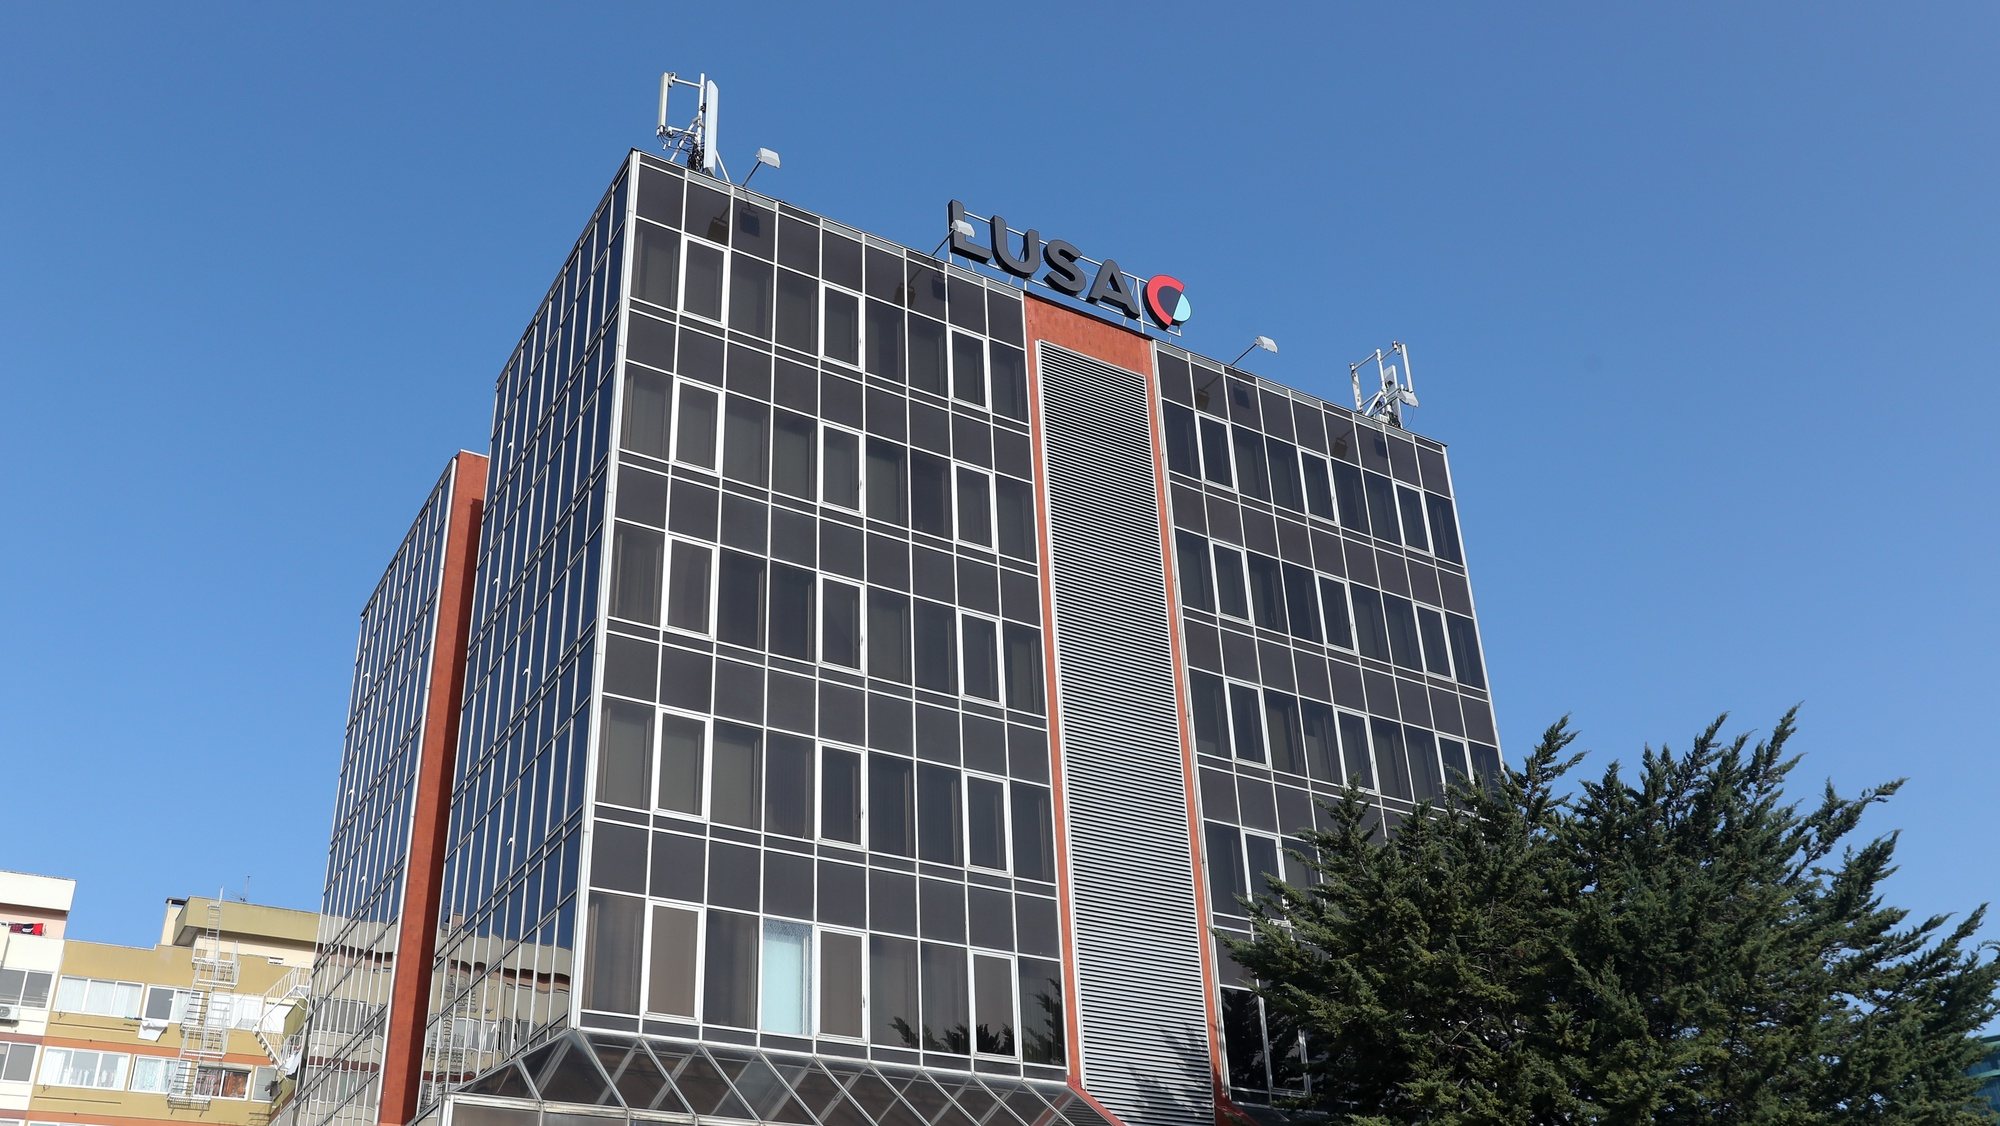 Edifício da agência Lusa em Benfica, Lisboa, 23 de janeiro de 2022. ANTÓNIO COTRIM/LUSA